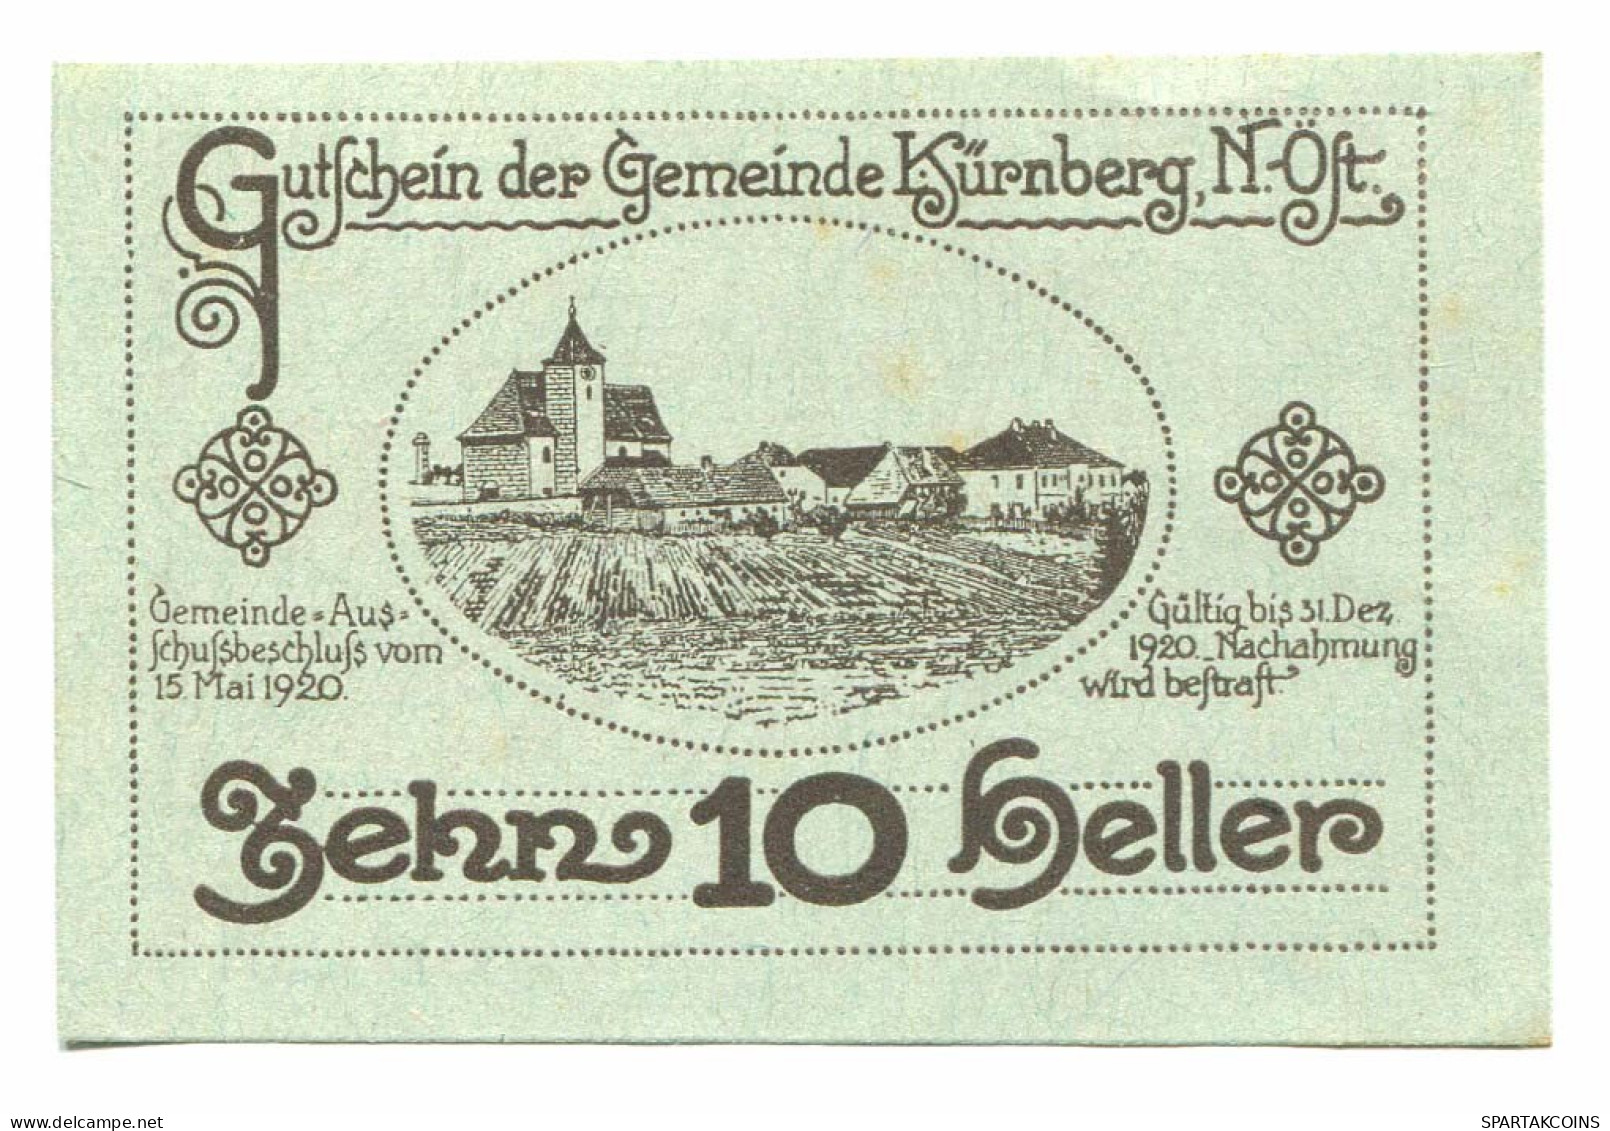 10 Heller 1920 KURNBERG Österreich UNC Notgeld Papiergeld Banknote #P10436 - [11] Local Banknote Issues